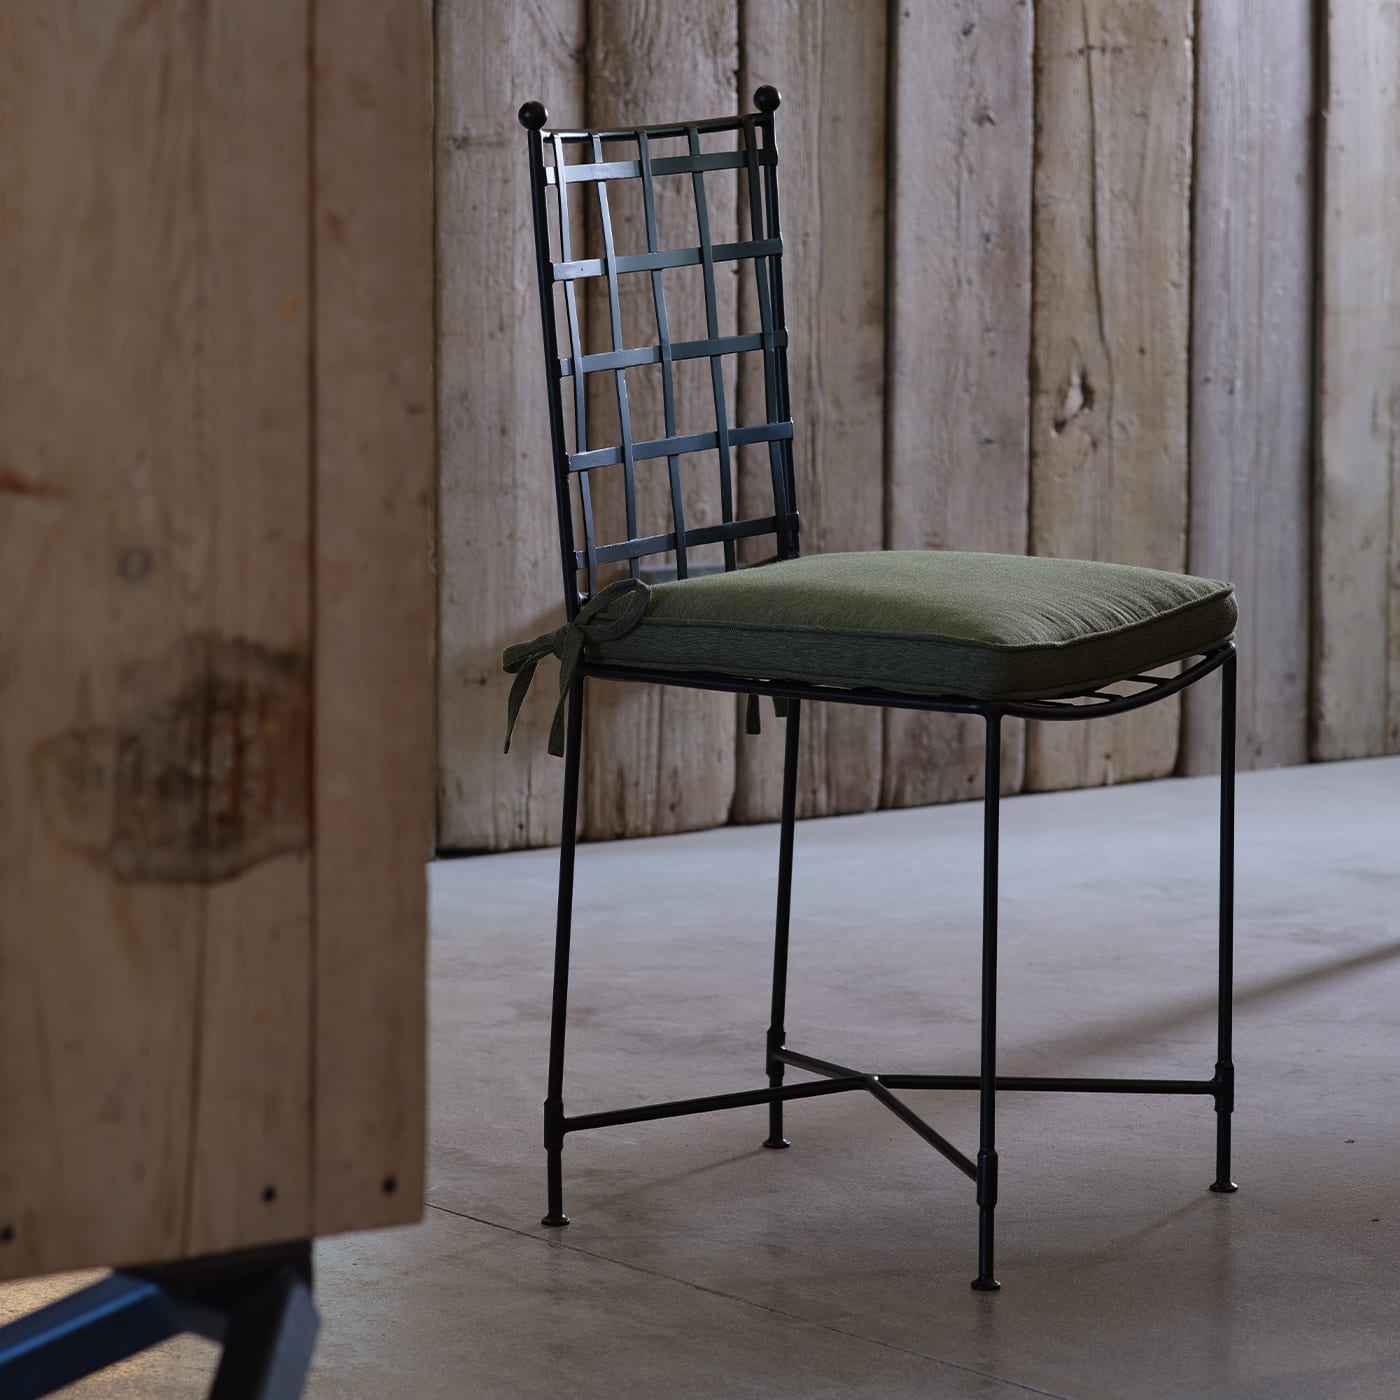 The Classic Green Garden Chair - B.B. for Reschio